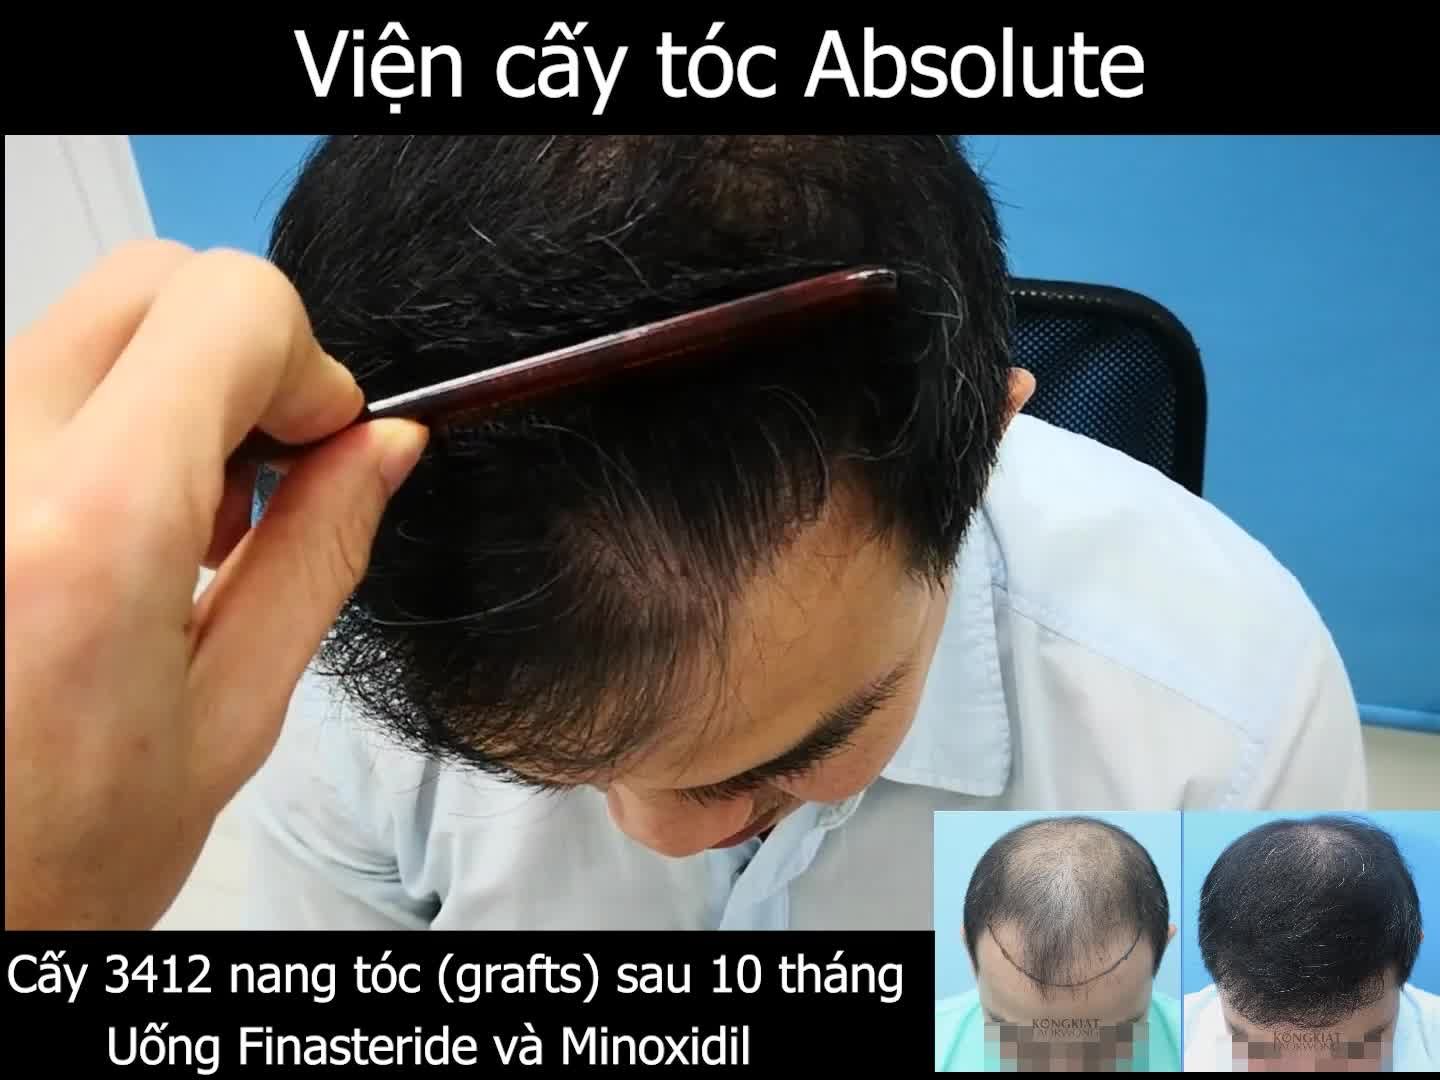 Kết quả cấy 3412 nang tóc trị hói chữ M và hói đỉnh đầu sau 10 tháng